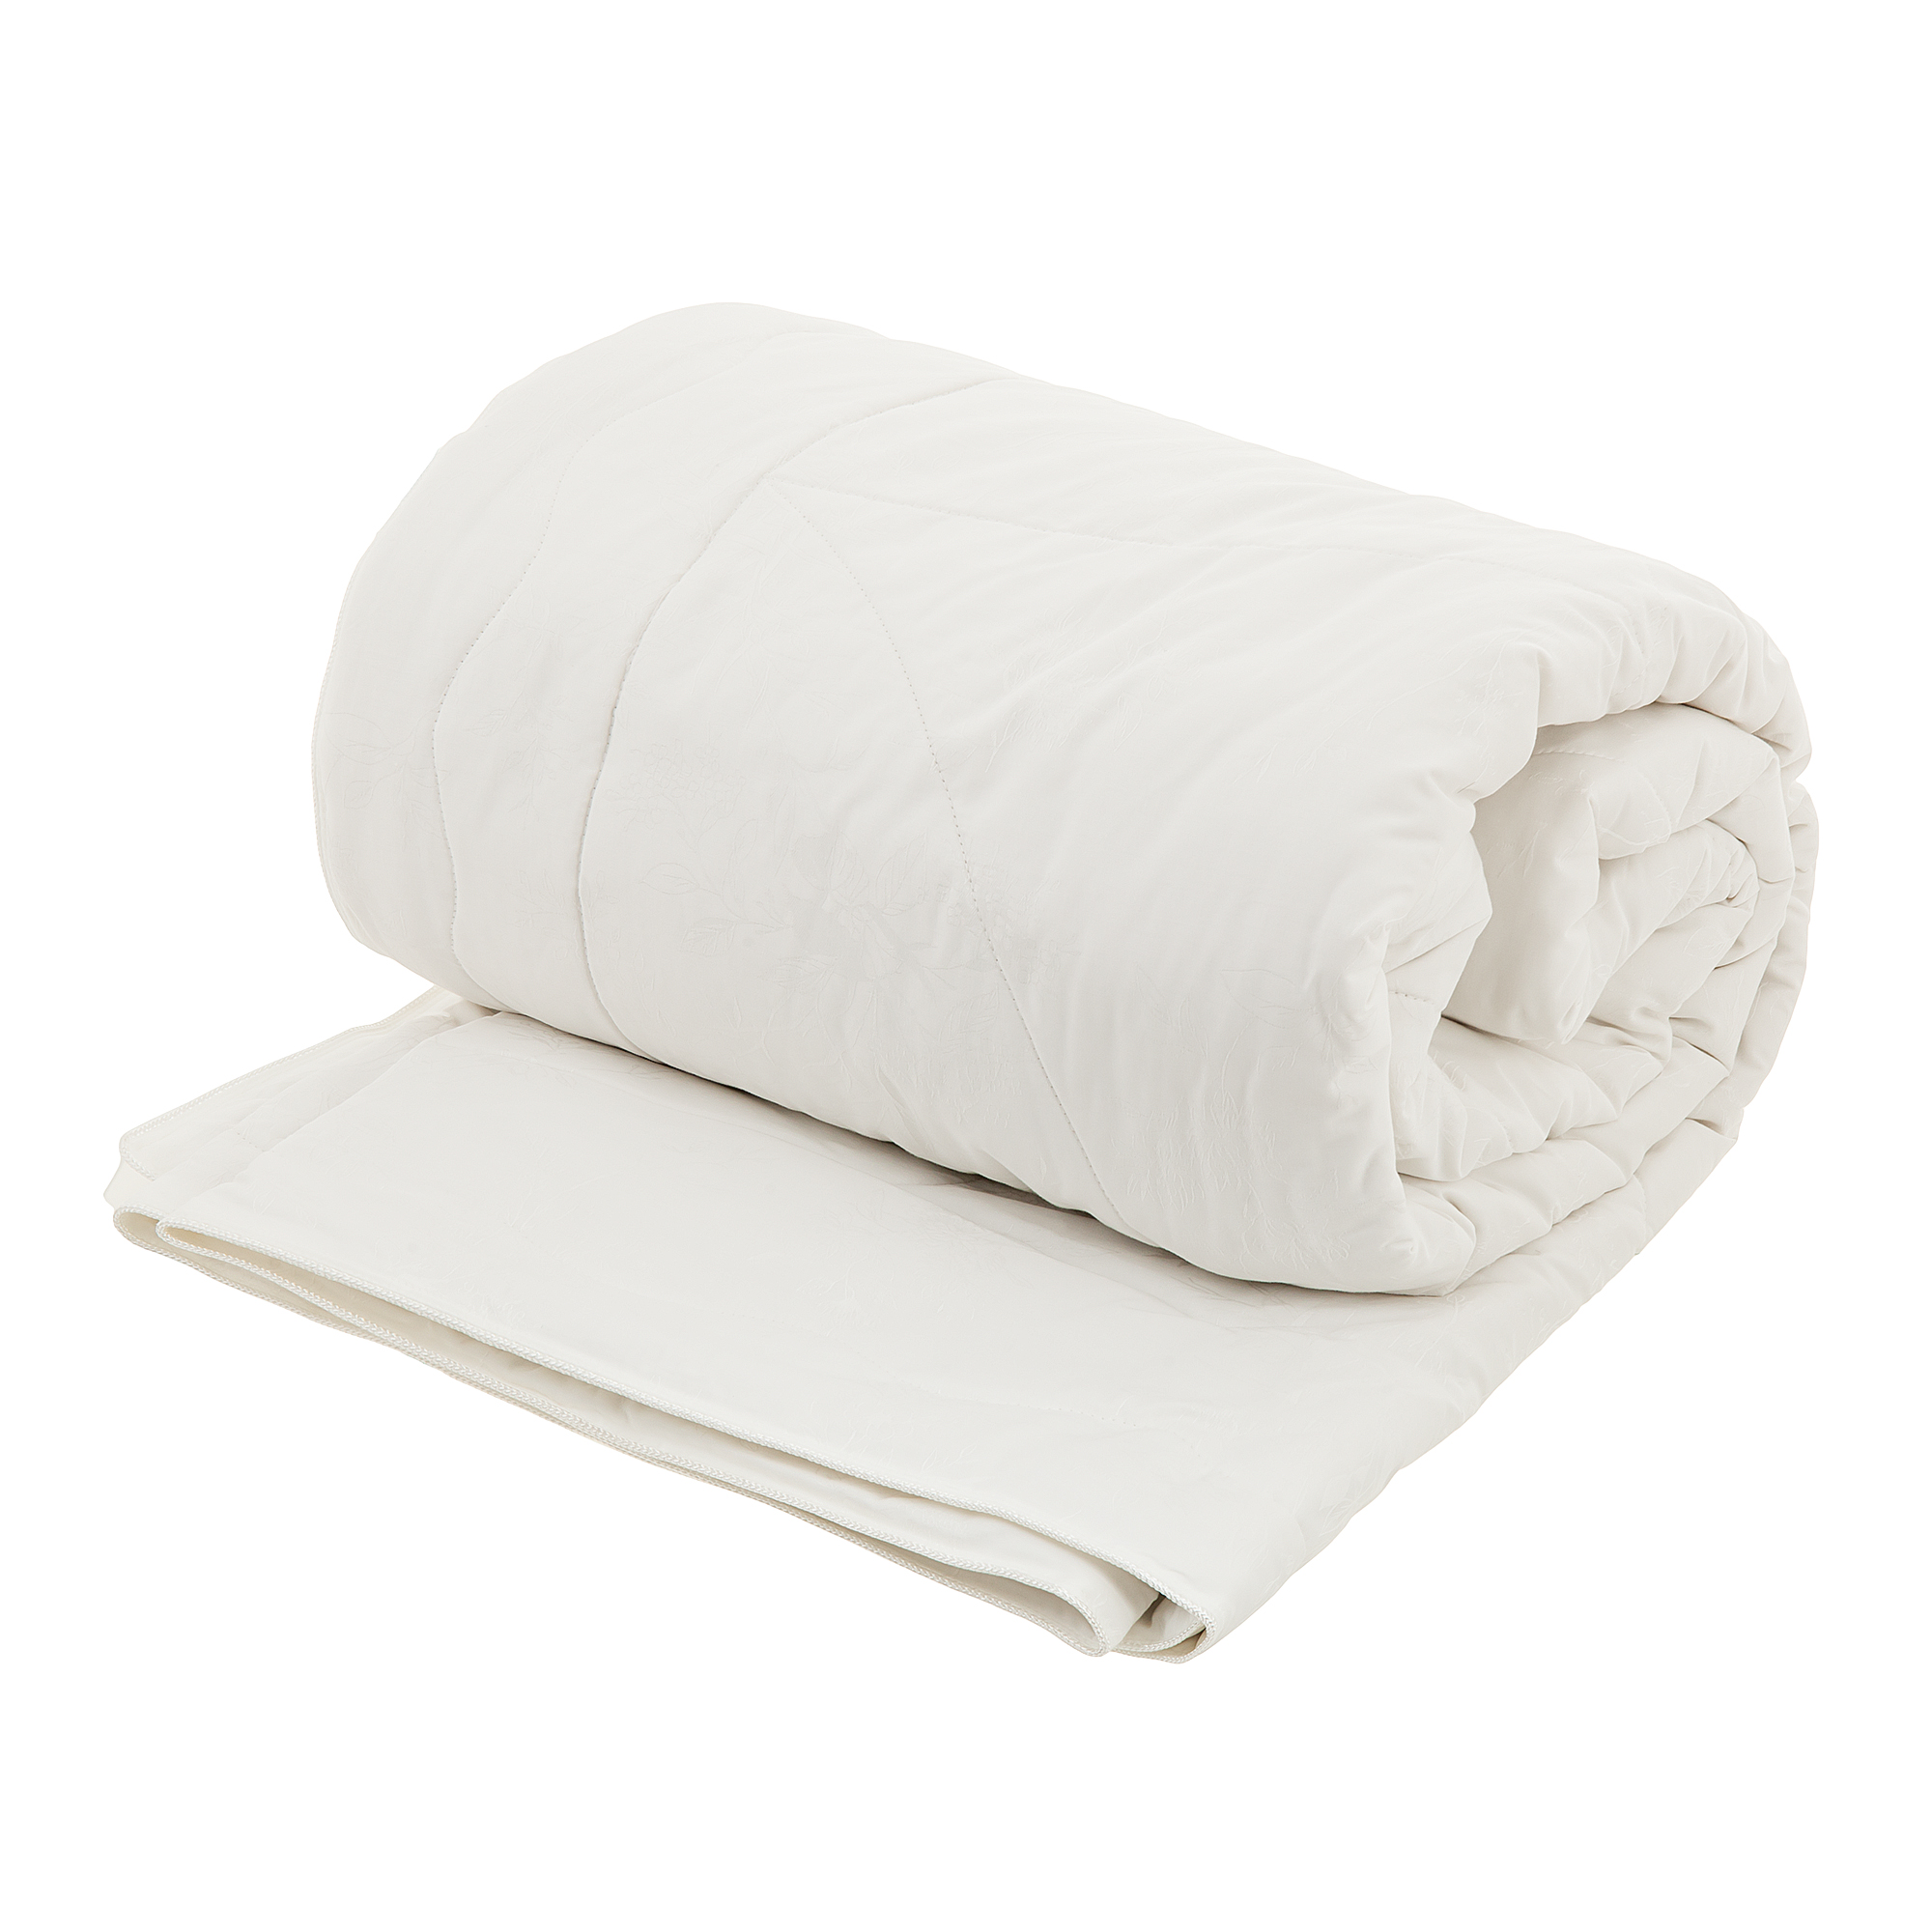 Одеяло Togas Лотос 200х210 см одеяло togas саммин белое 200х210 см